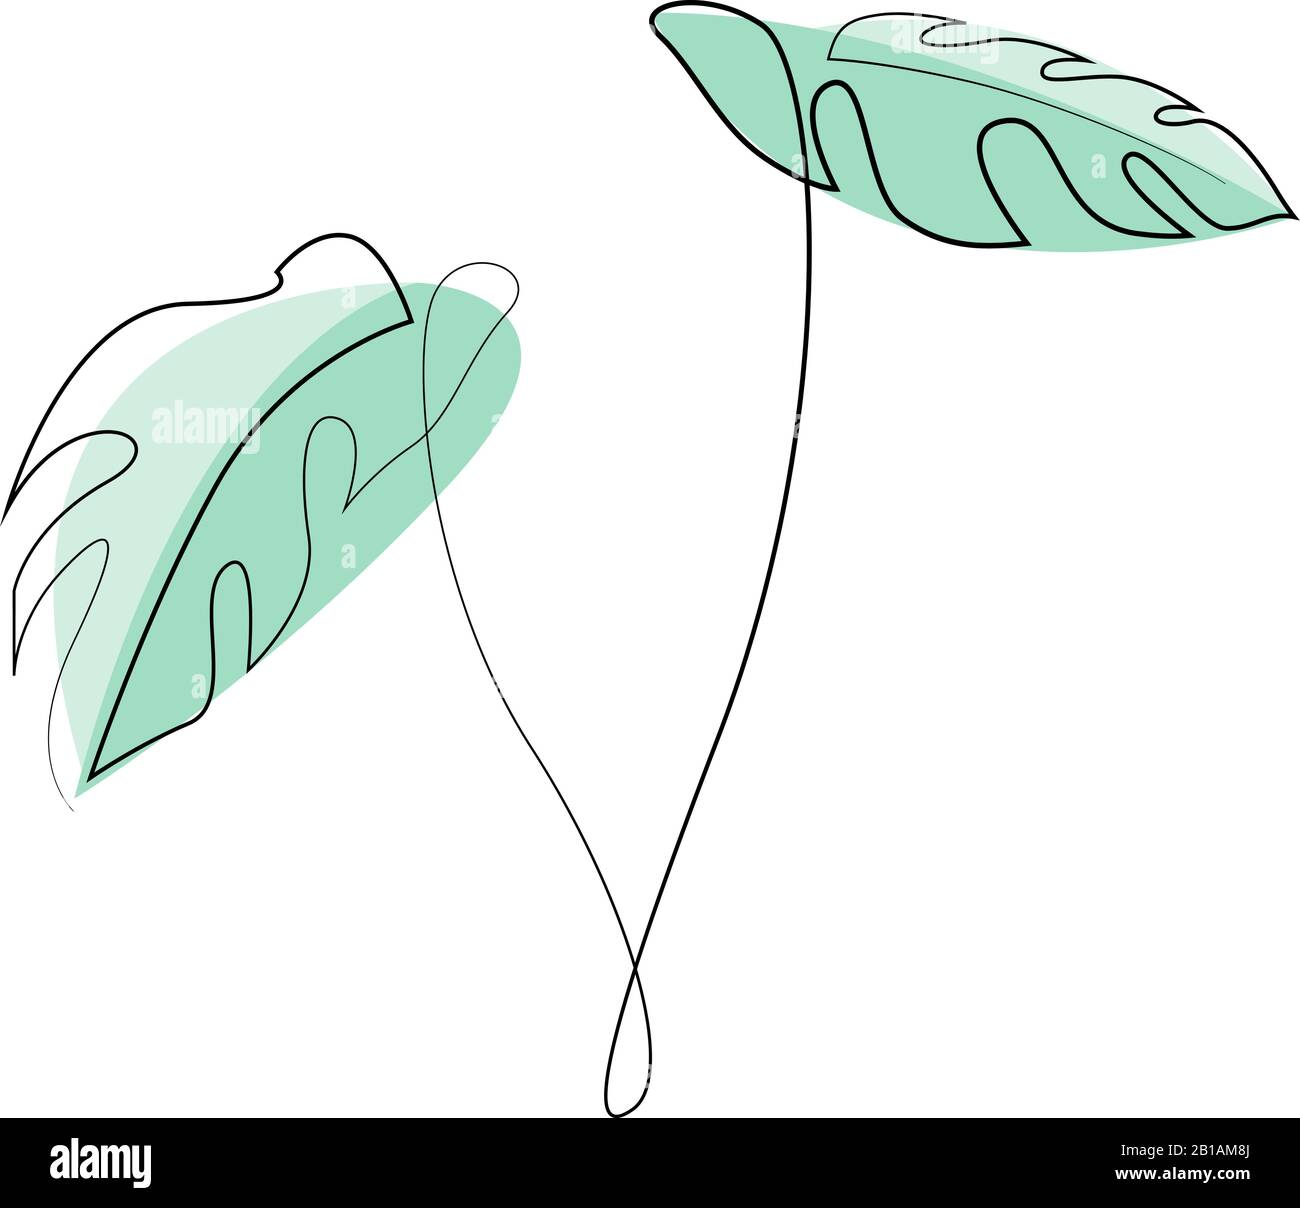 Monstera delicosa Plant hinterlässt durchgehend eine Linie und zeichnet minimalistisches Design. Einfacher Minimalstil auf weißem Hintergrund. Vektorgrafiken Stock Vektor